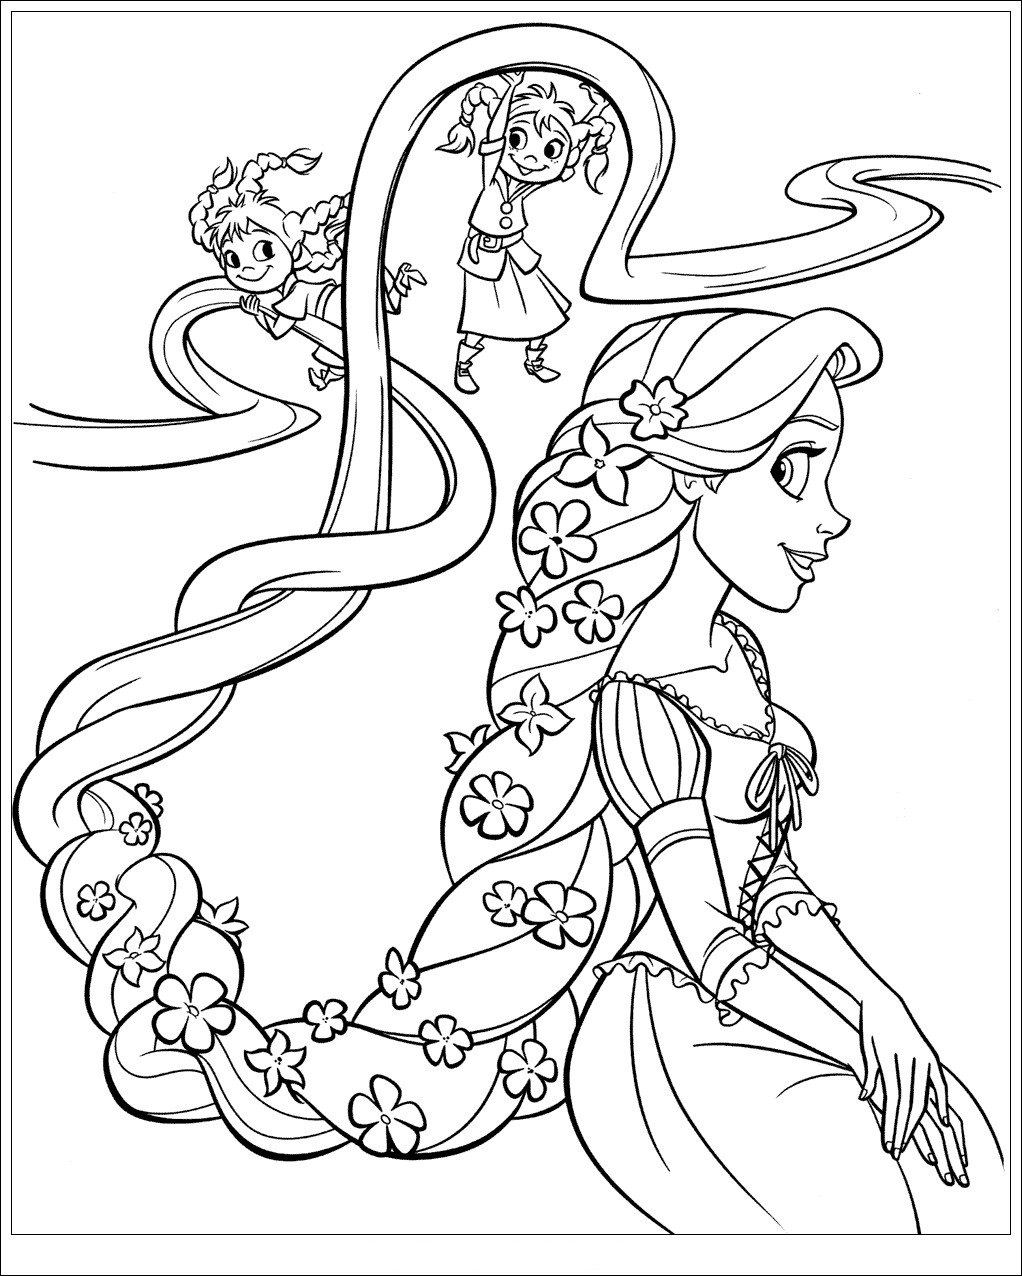 Dibujos para colorear gratis de Tangled Rapunzel para descargar